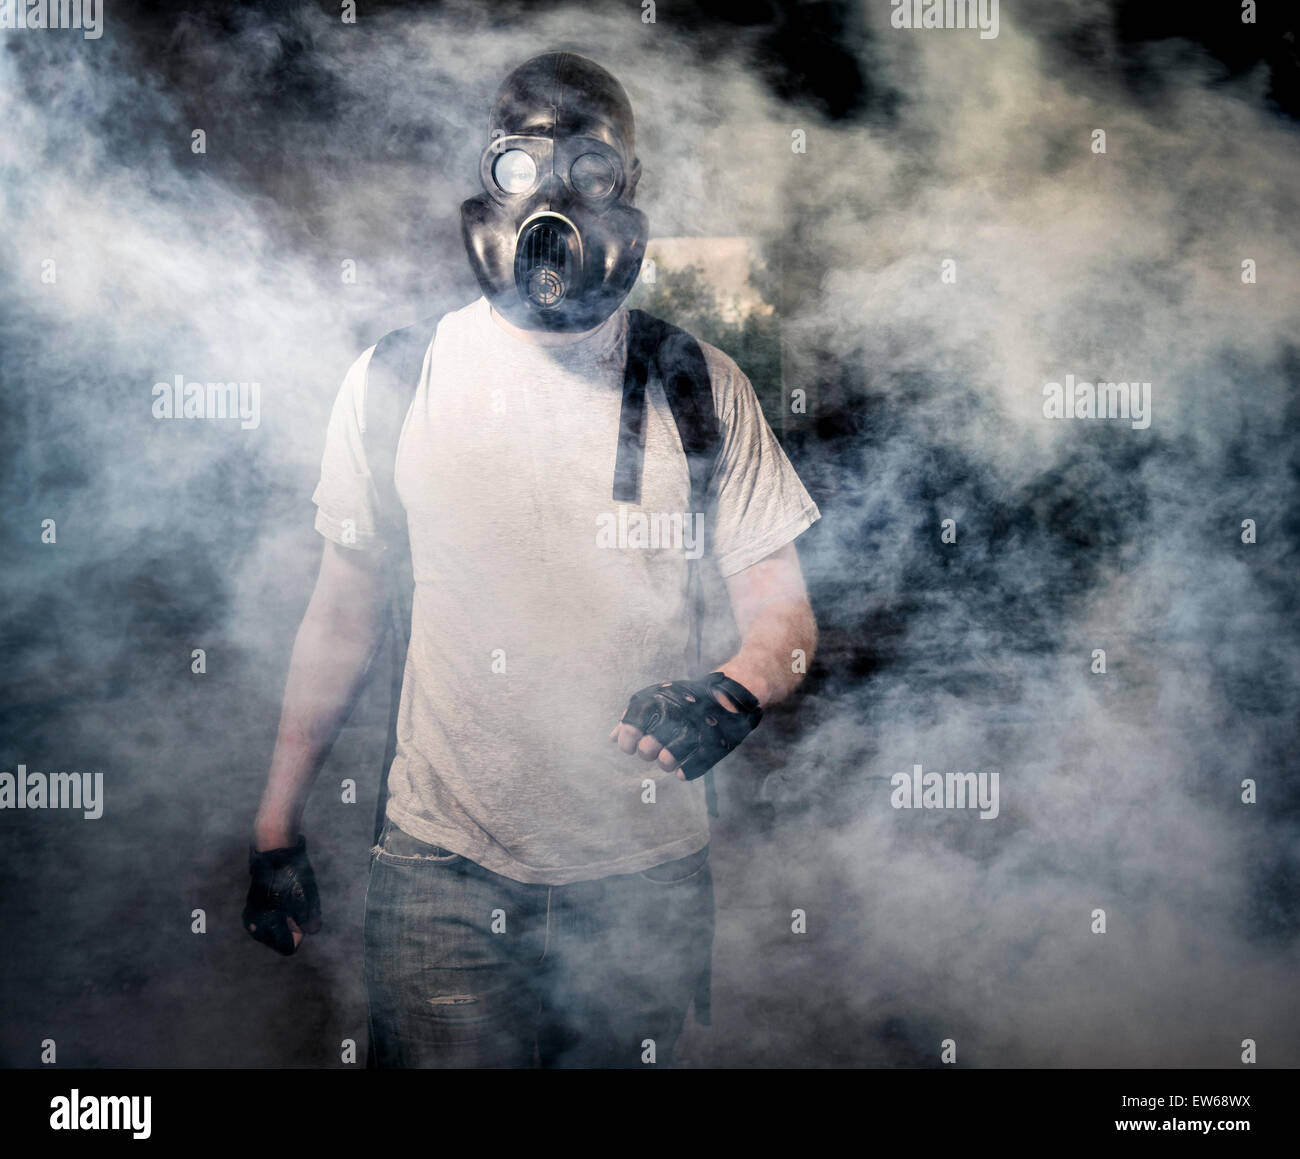 L'homme à un masque à gaz marche à travers la fumée Banque D'Images